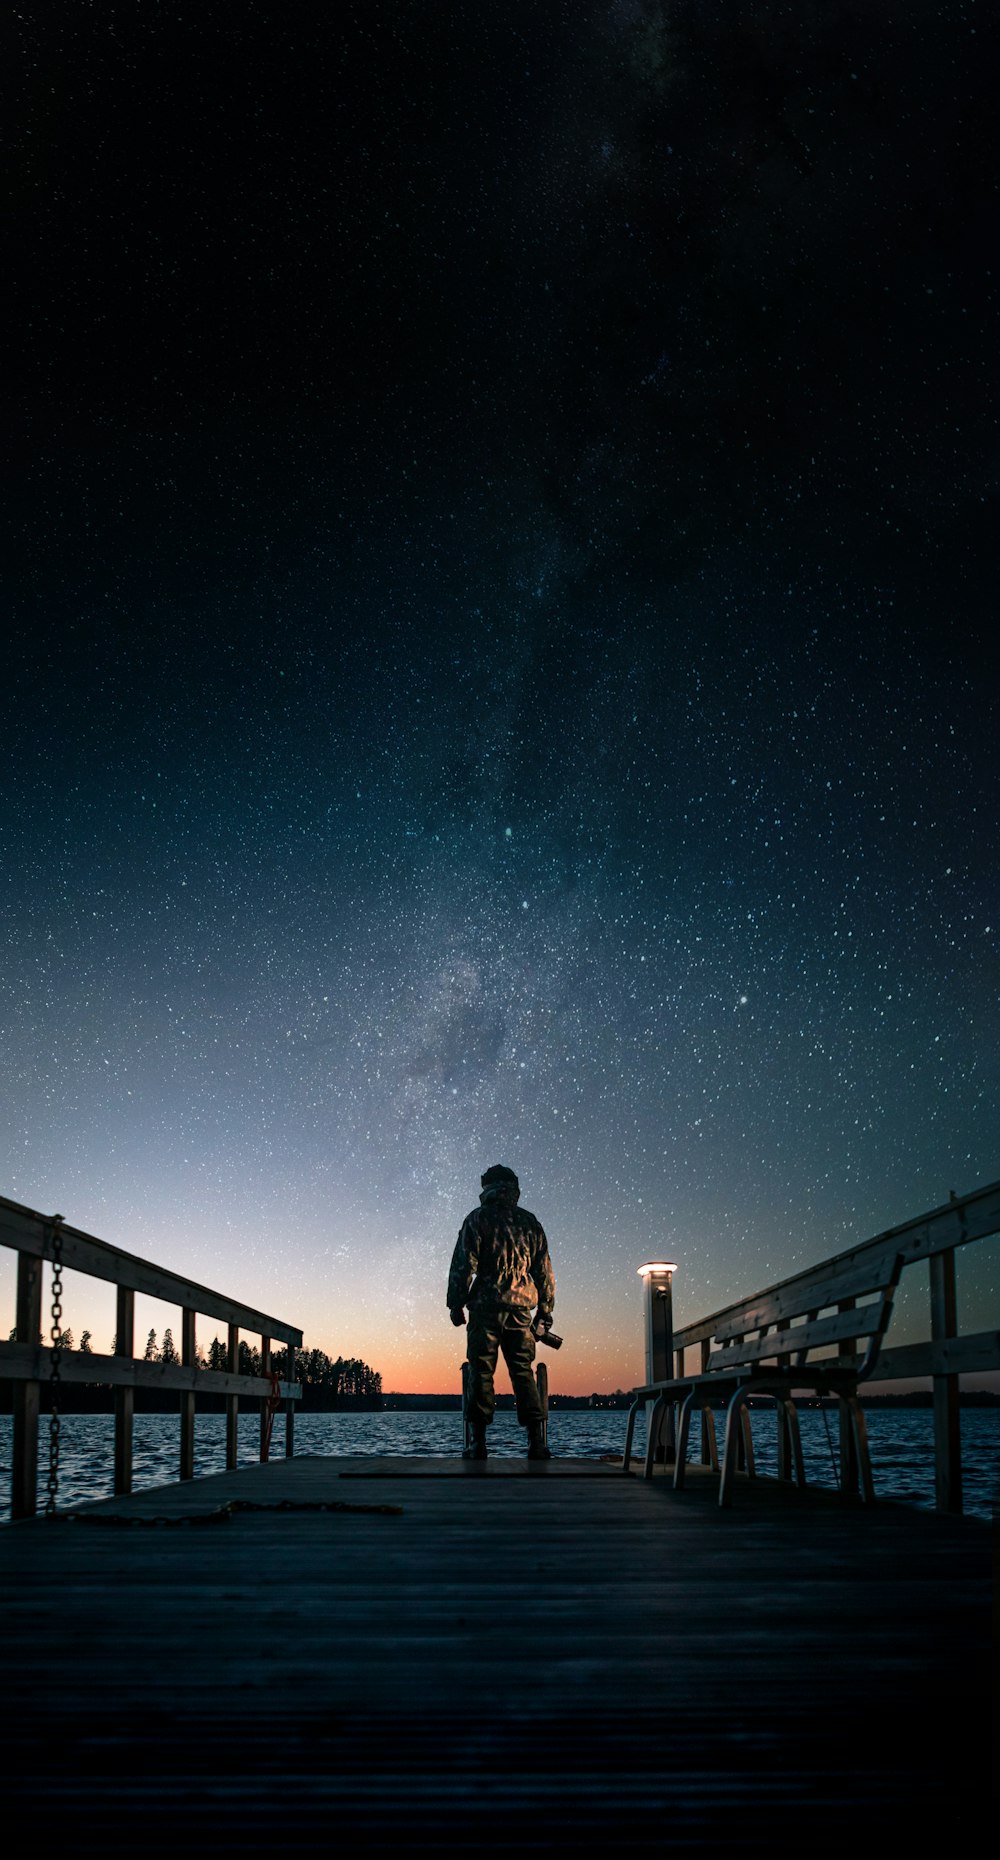 Hombre con chaqueta negra de pie en el puente de madera marrón bajo la noche estrellada